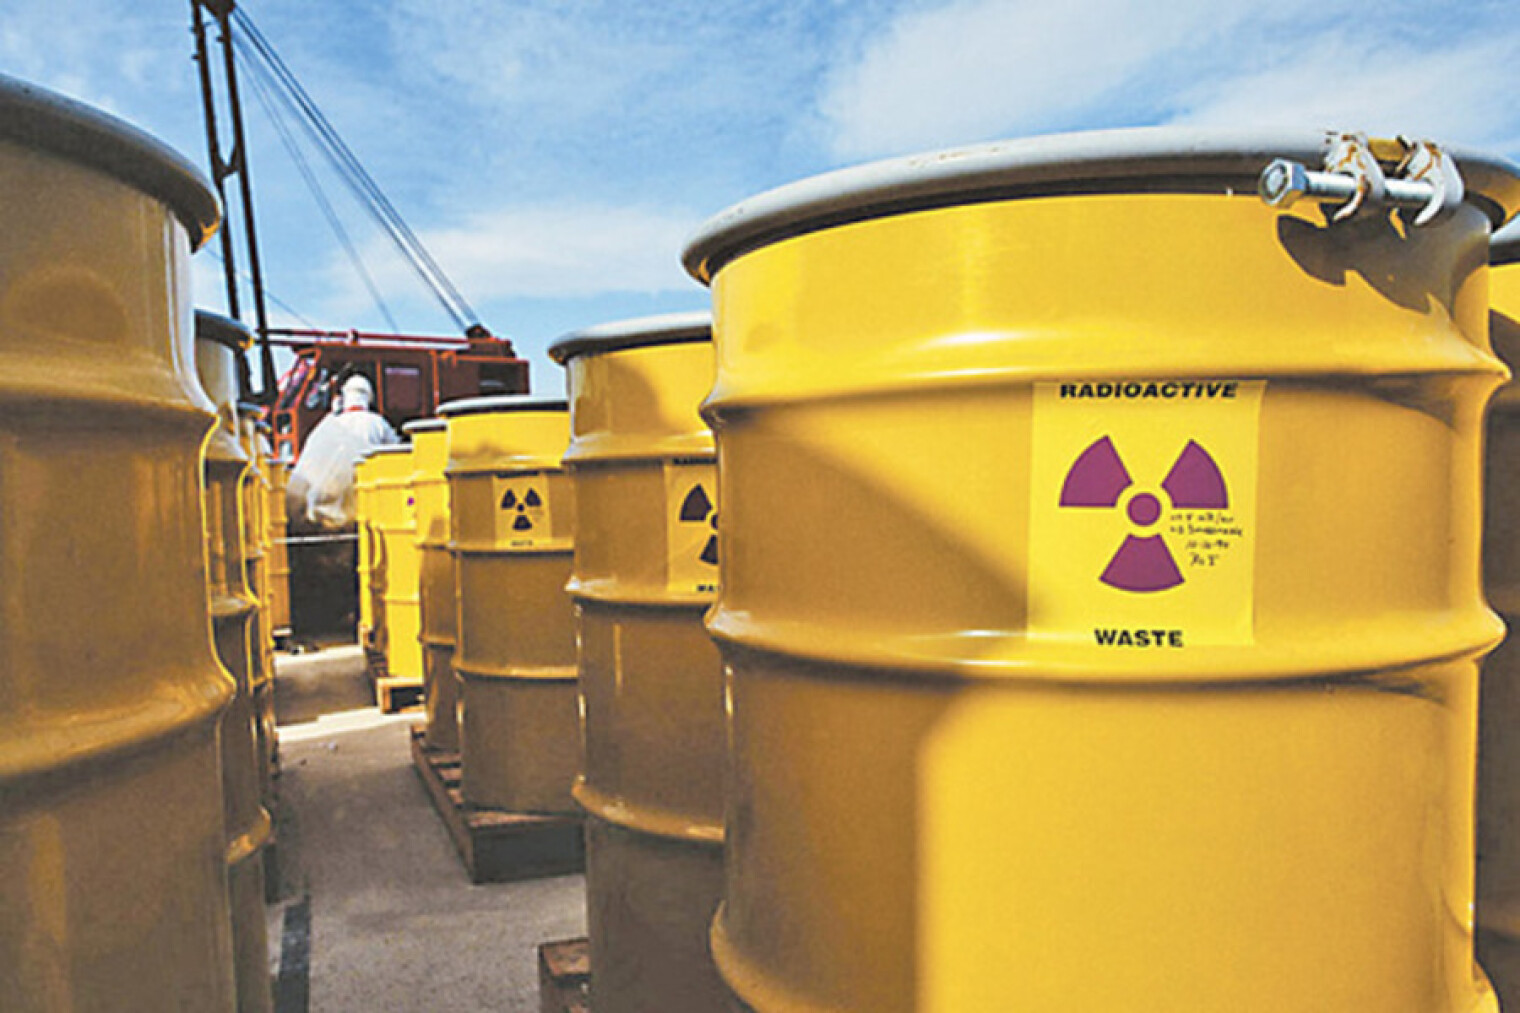 Ядерные отходы. Хранилище жидких радиоактивных отходов. Битумирование радиоактивных отходов. Жидкие радиоактивные отходы. Обращение с радиоактивными отходами.